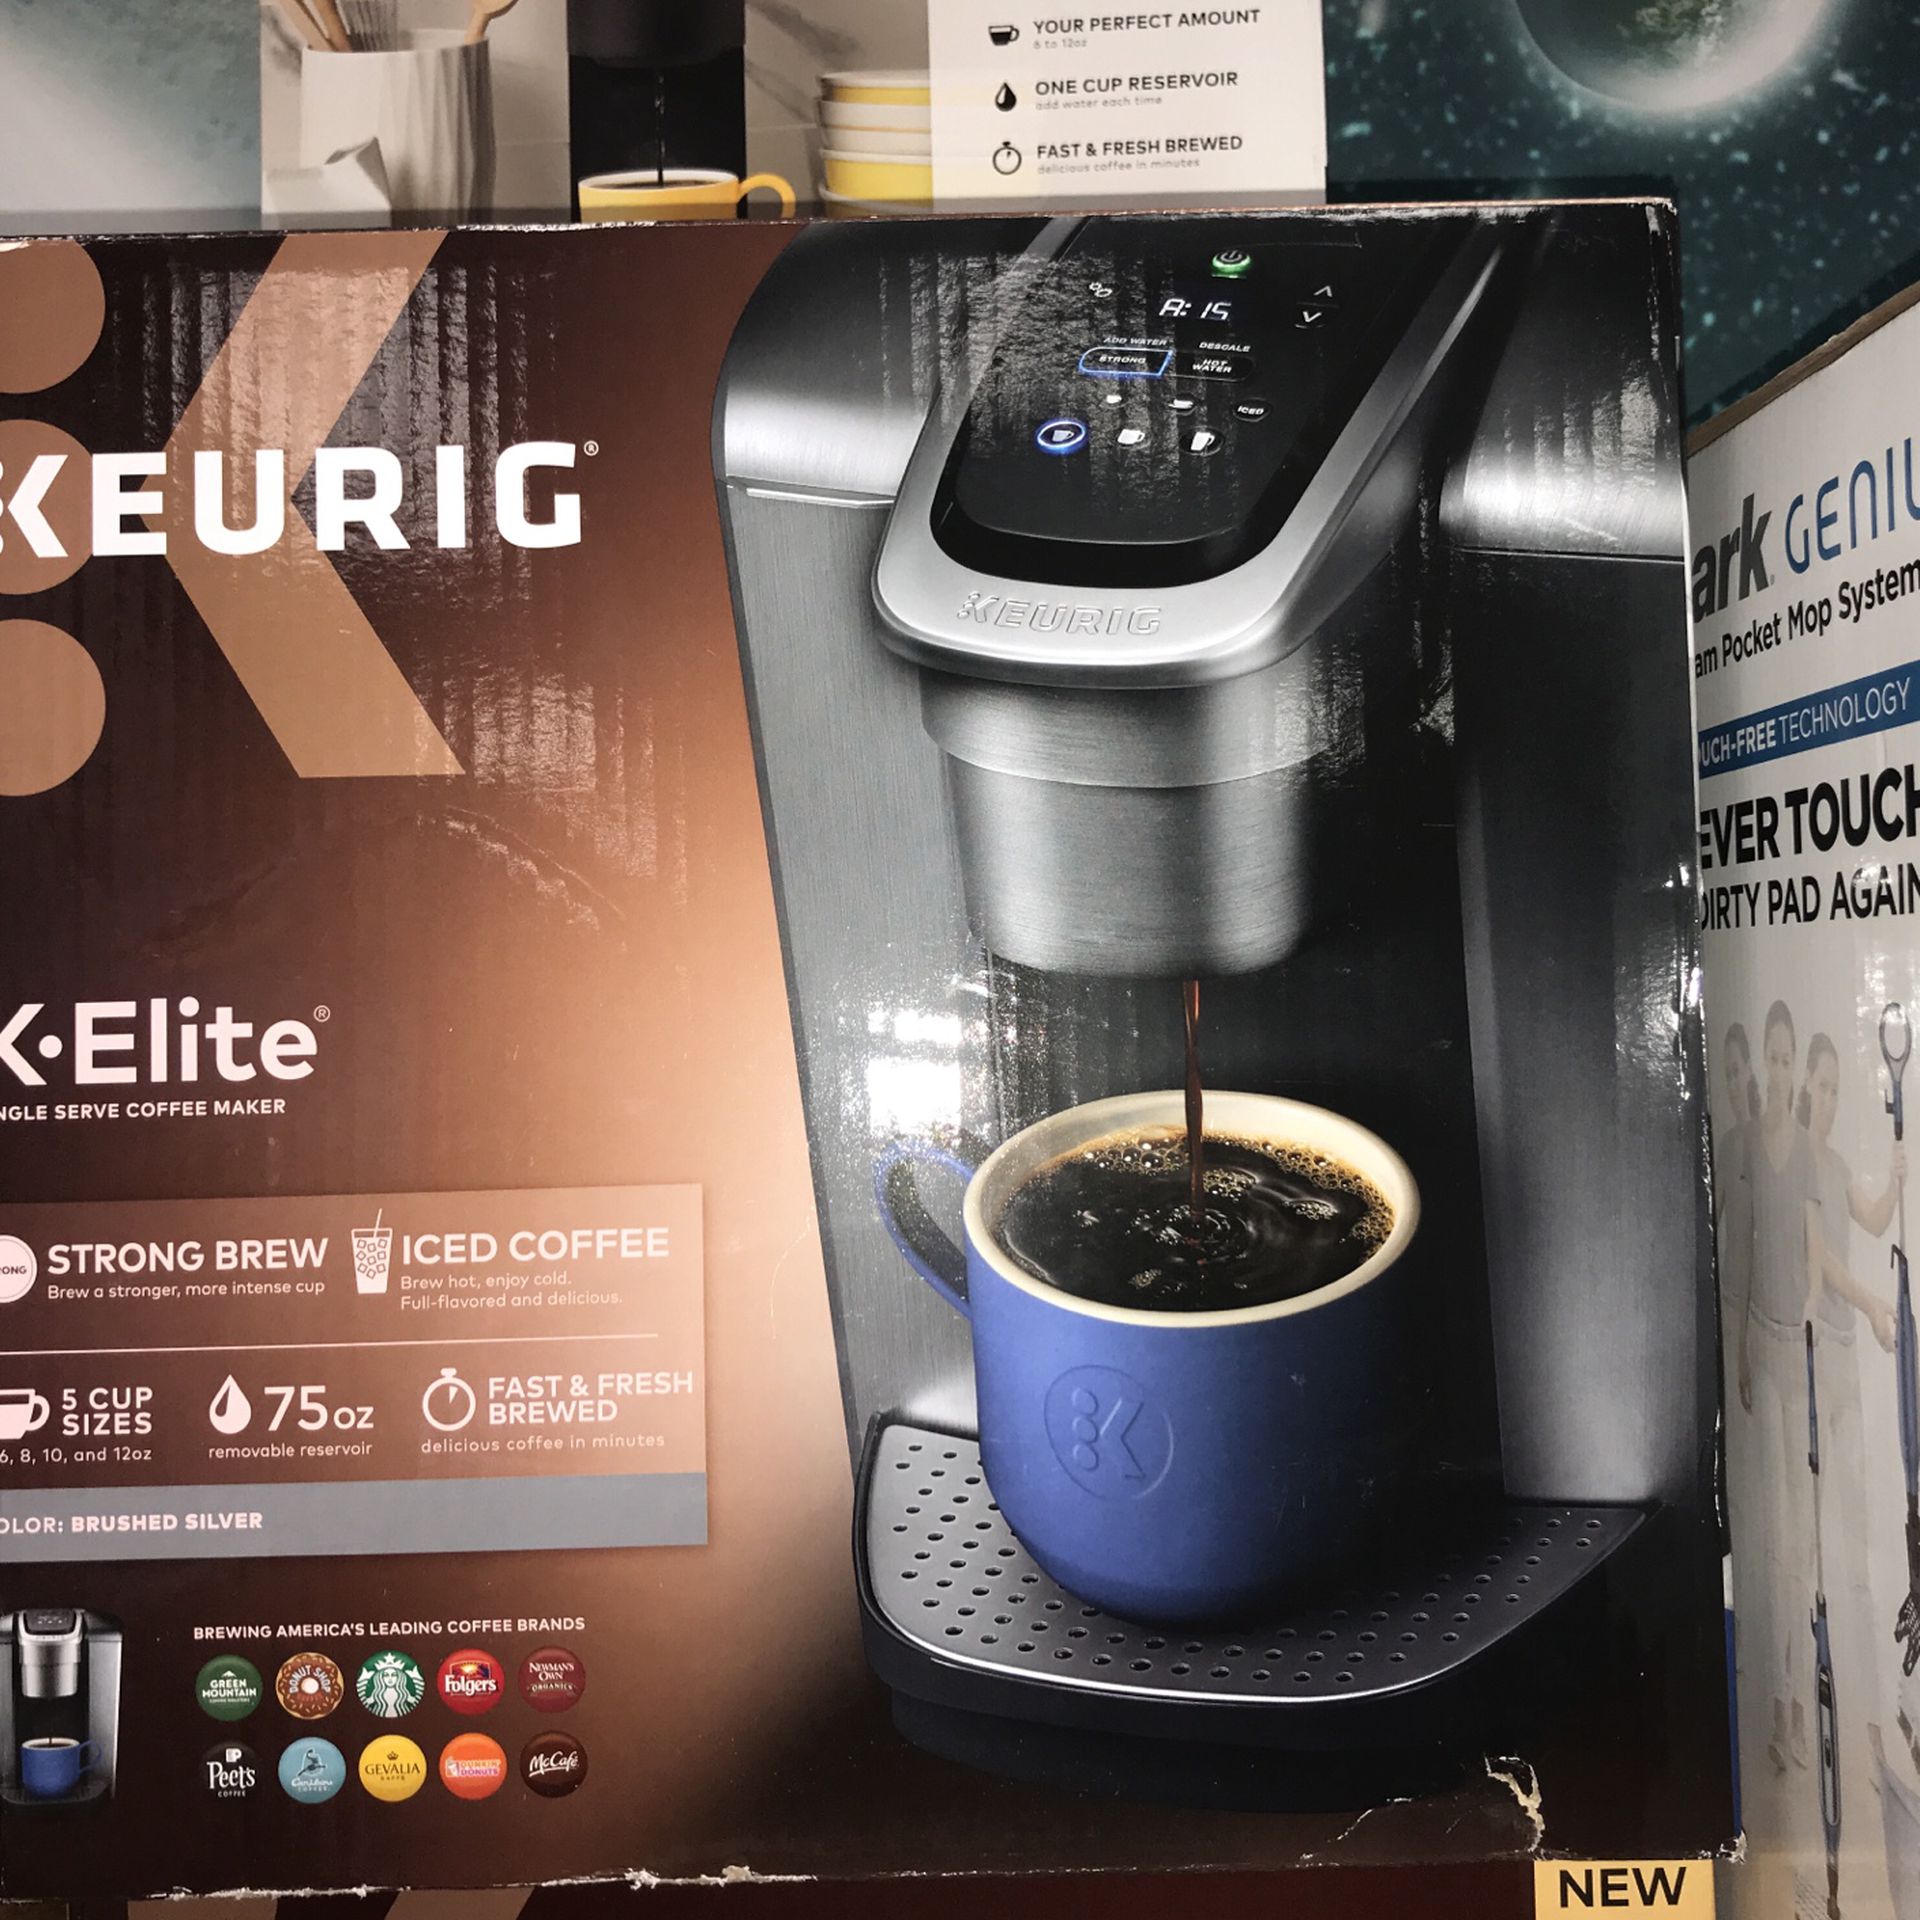 Keurig K•elite Coffee Maker